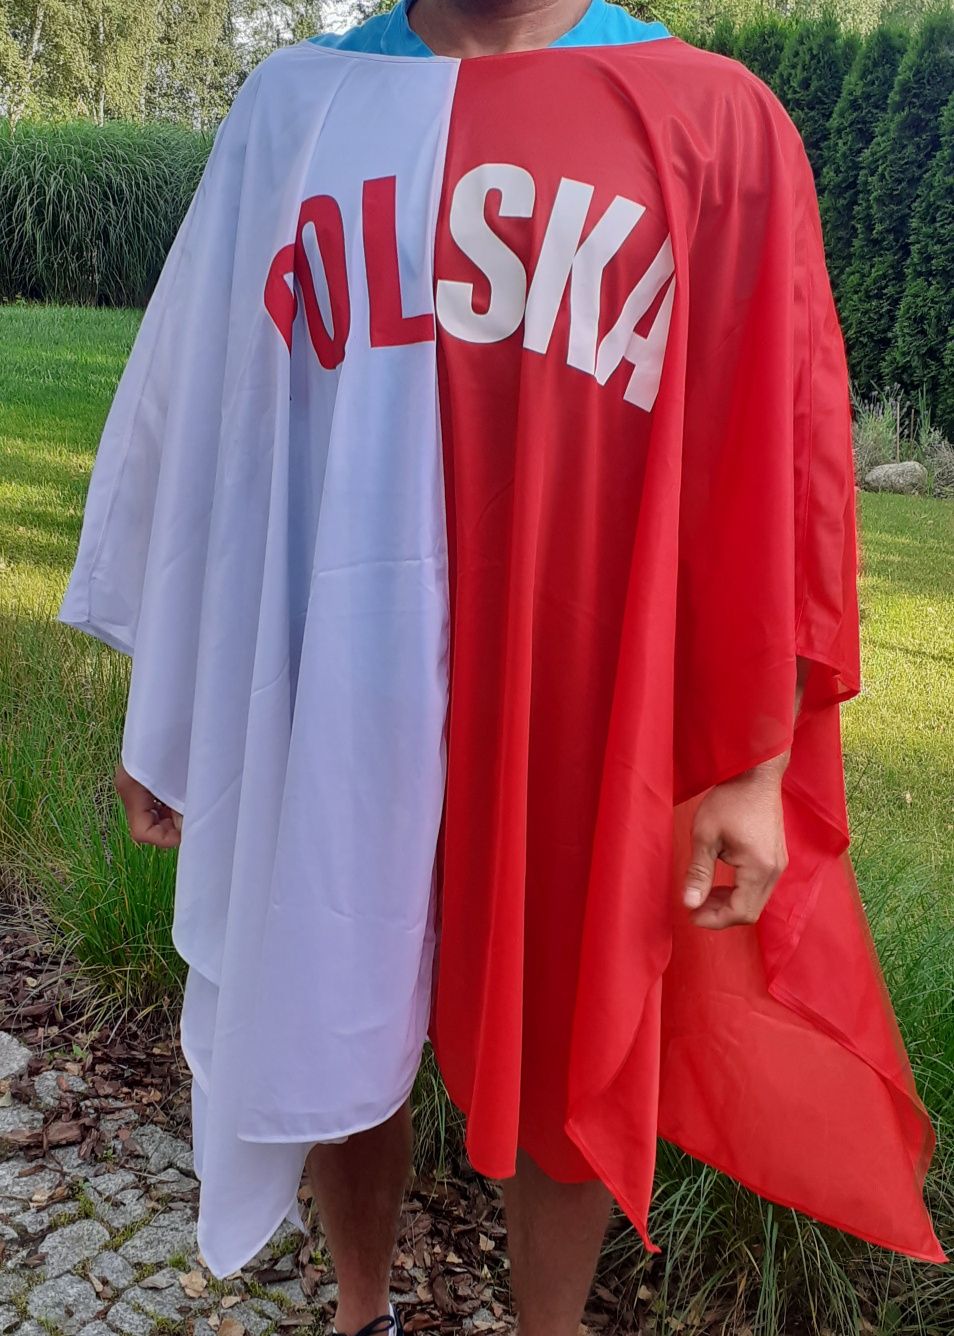 Peleryna biało- czerwona dla kibica Polski